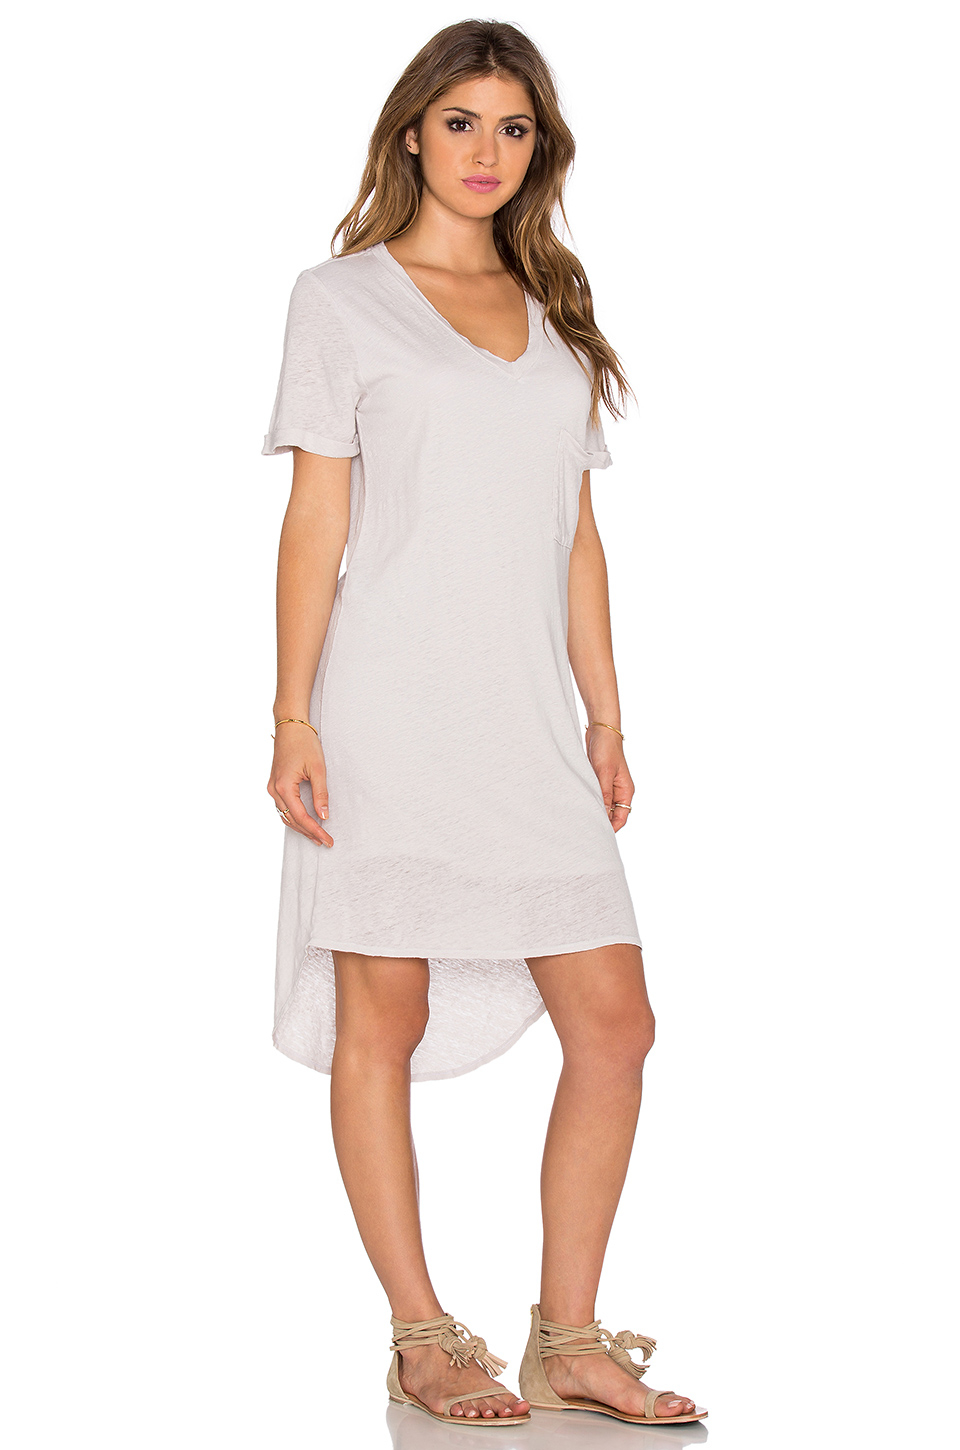 Lyst - Dolan V Neck T-shirt Dress in White